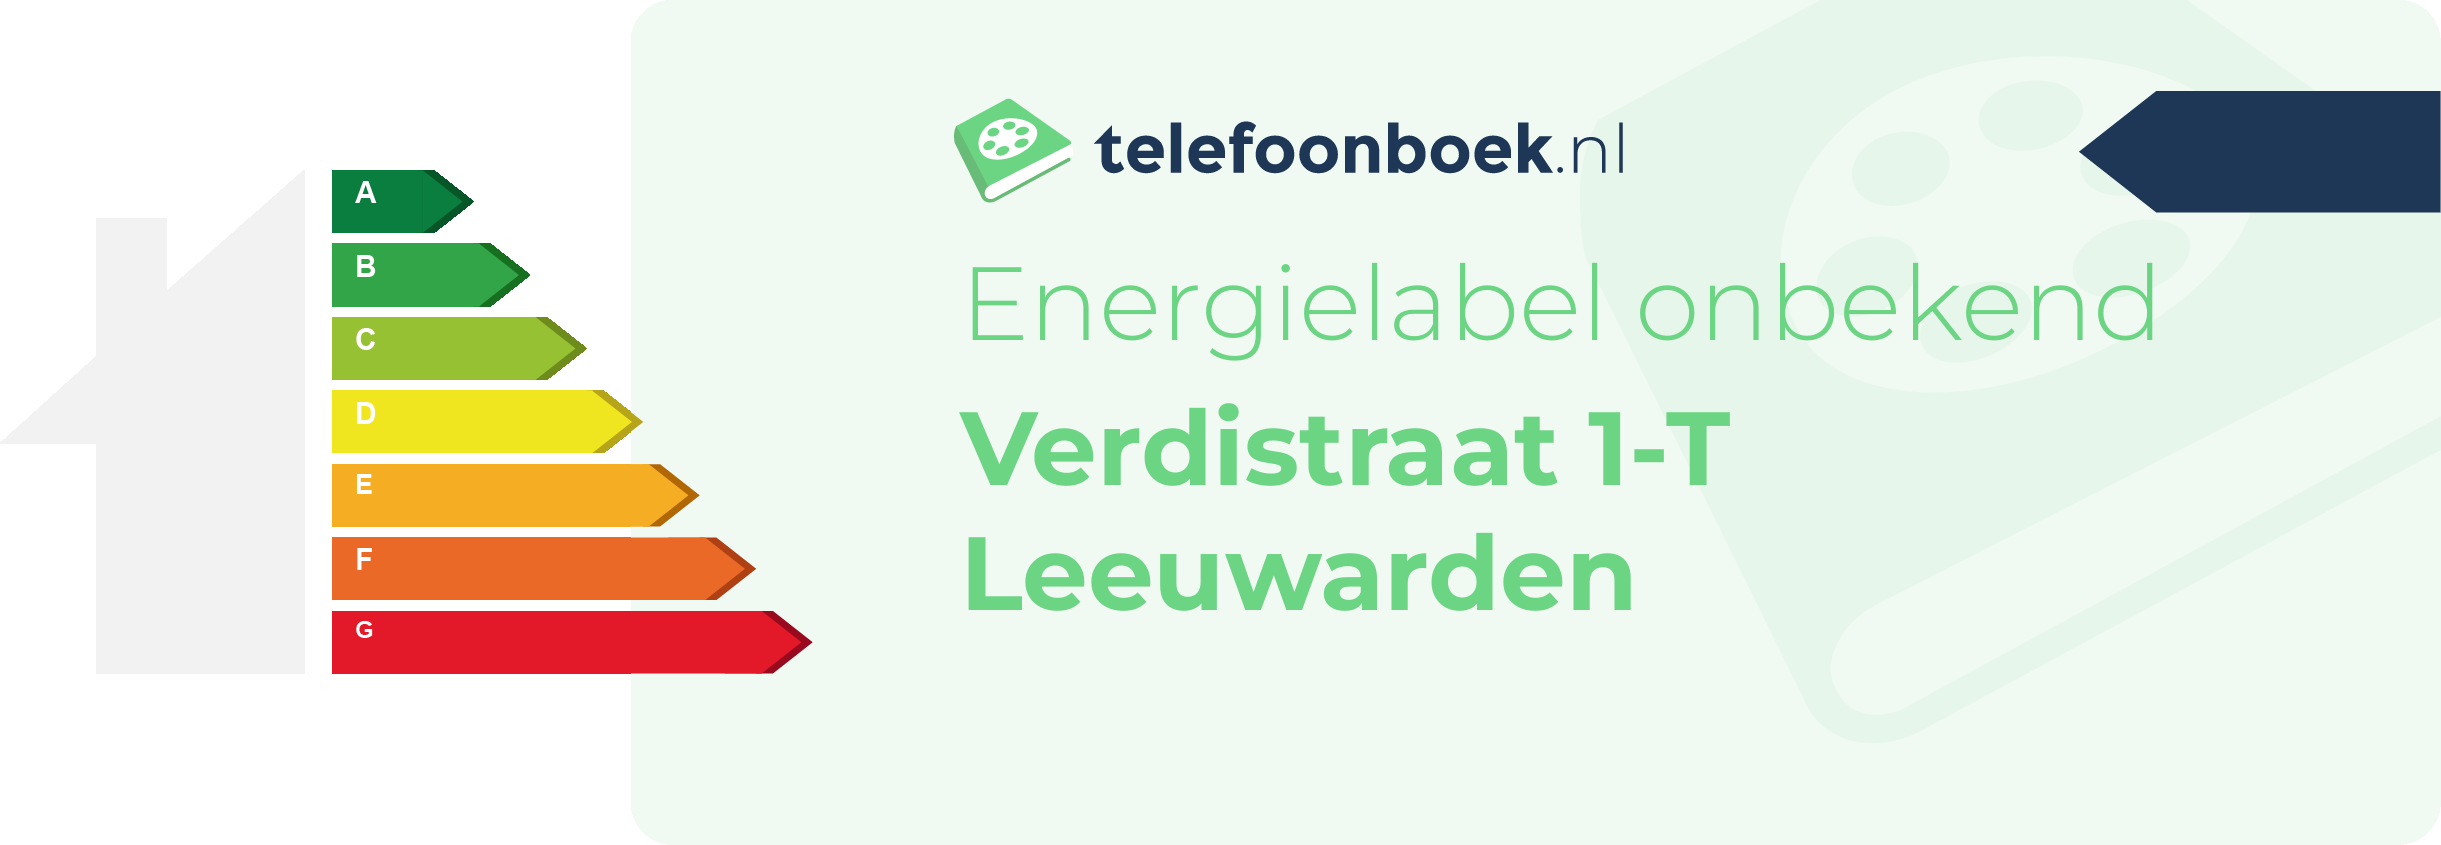 Energielabel Verdistraat 1-T Leeuwarden